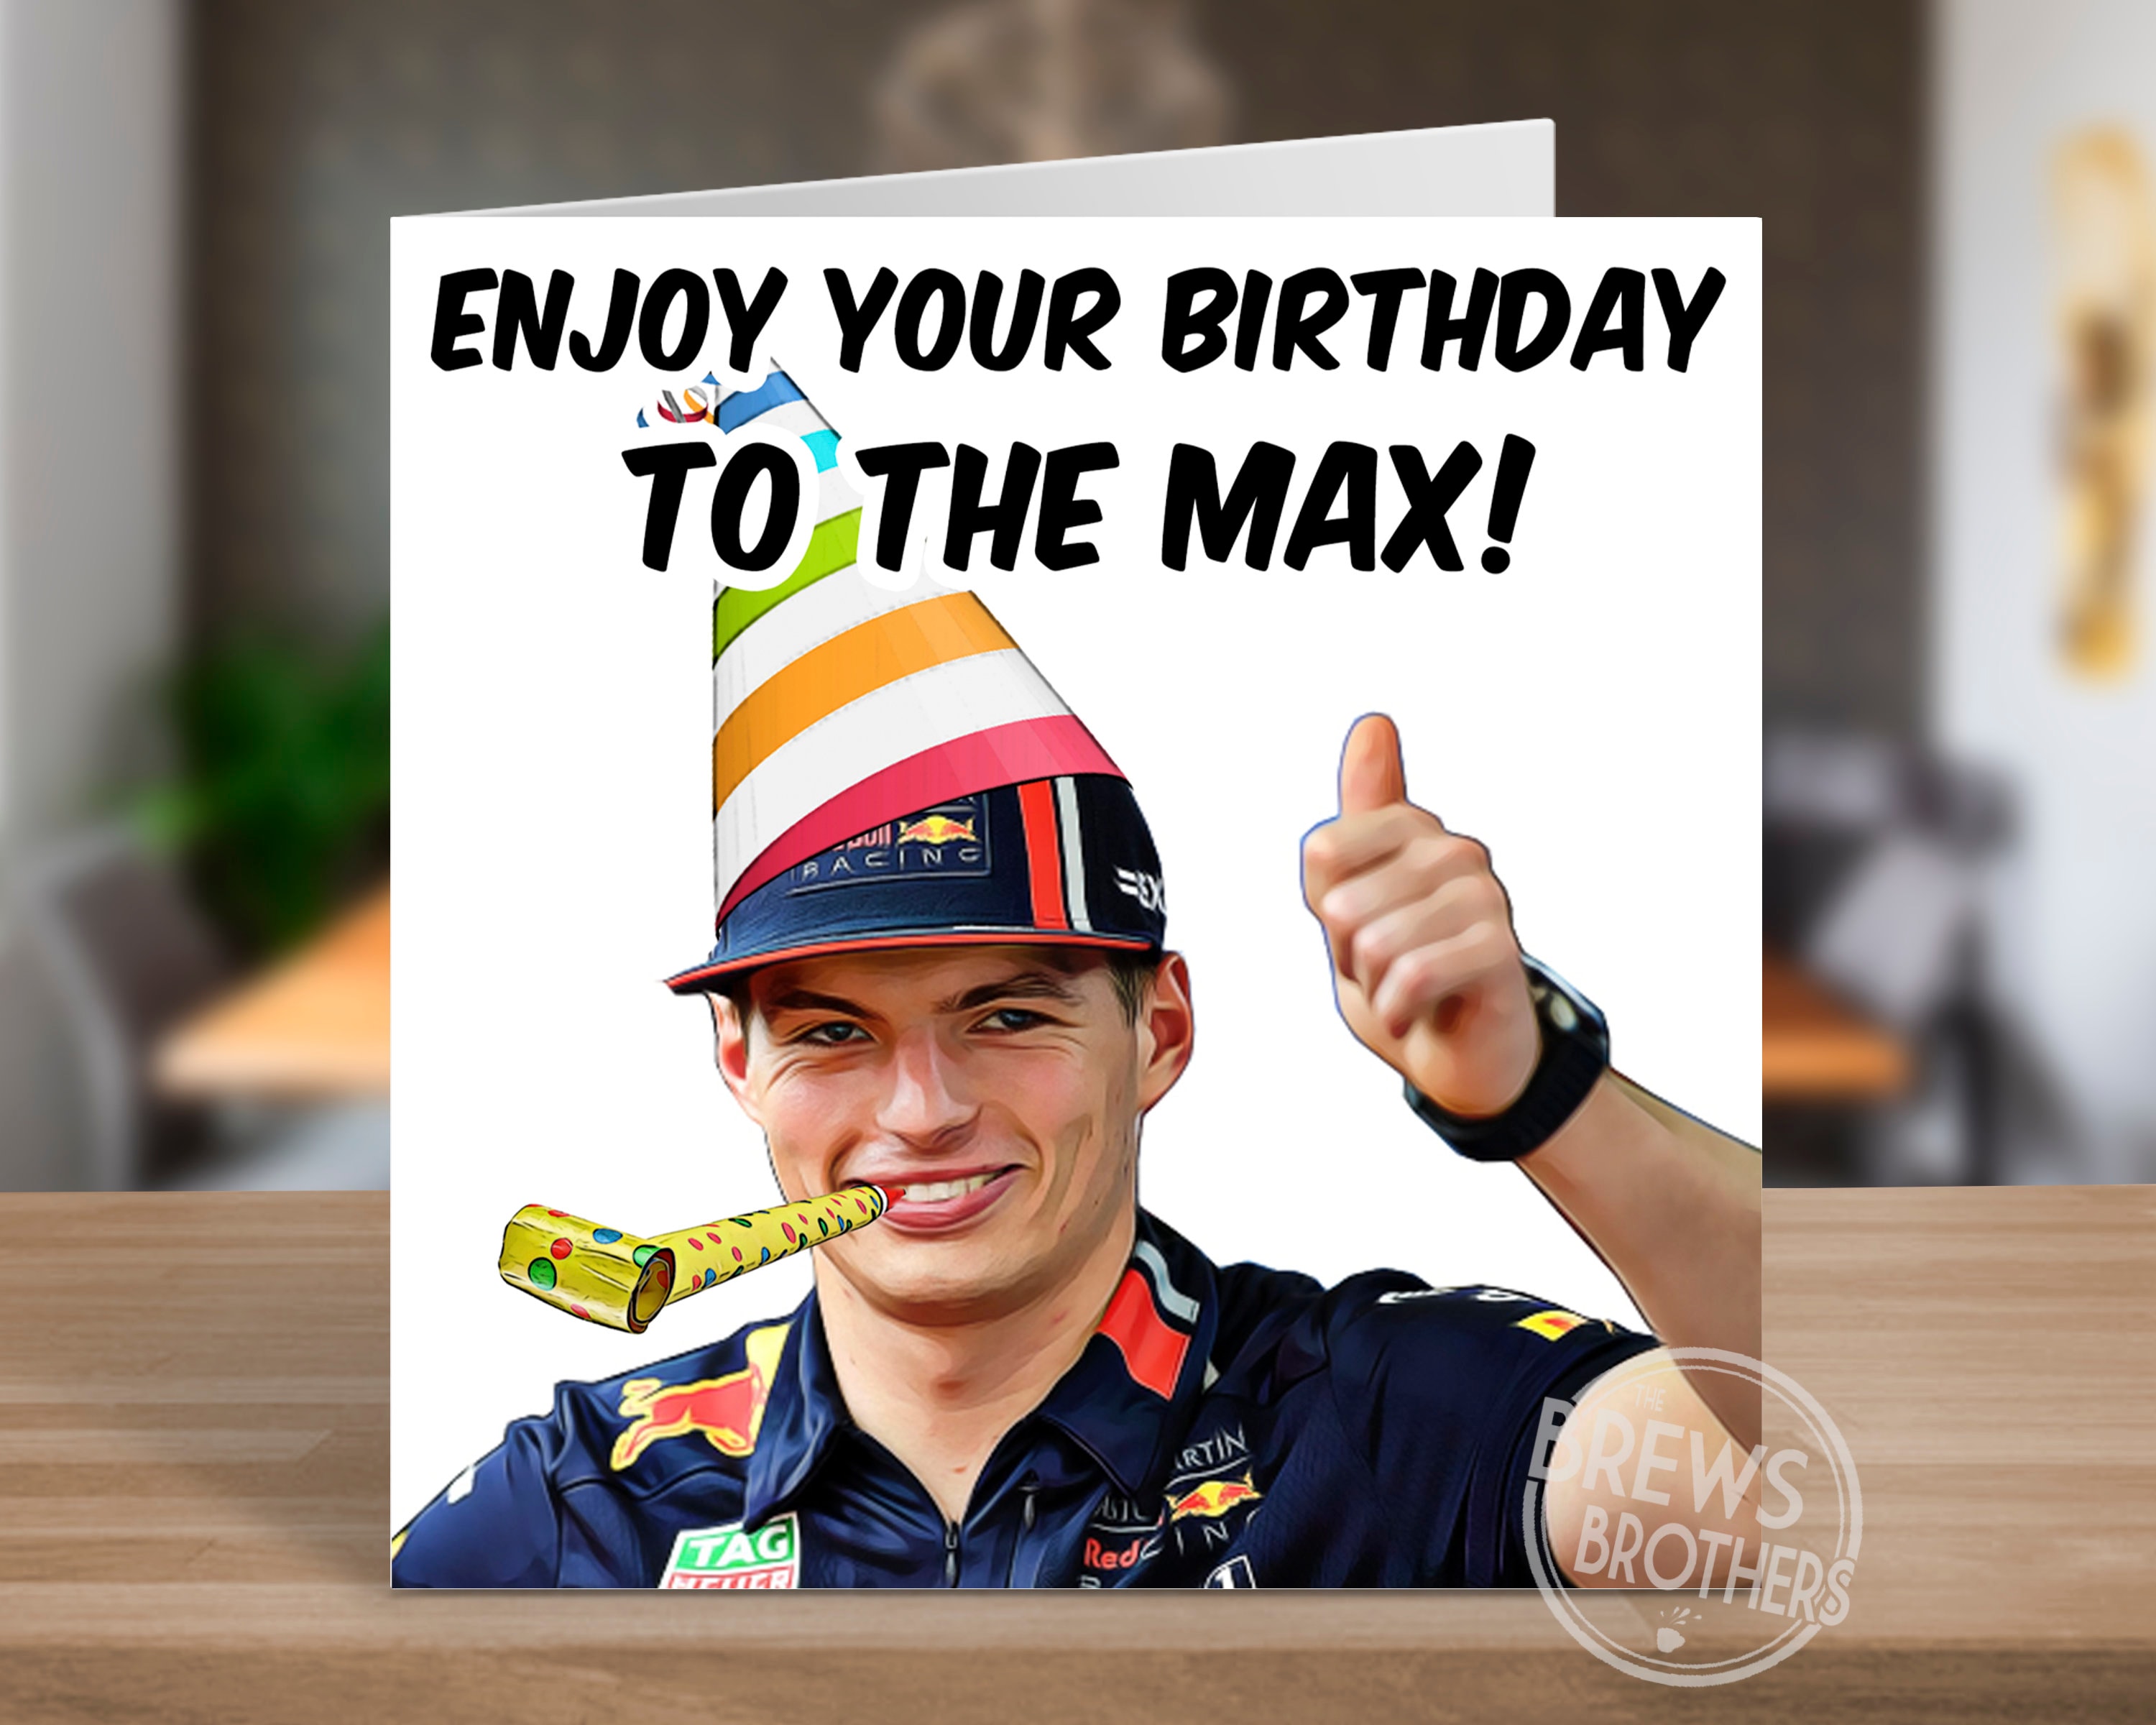 aanwijzing Alsjeblieft kijk Kinderpaleis Max Verstappen F1 Formula 1 Birthday Card Racing Gift Ideas - Etsy